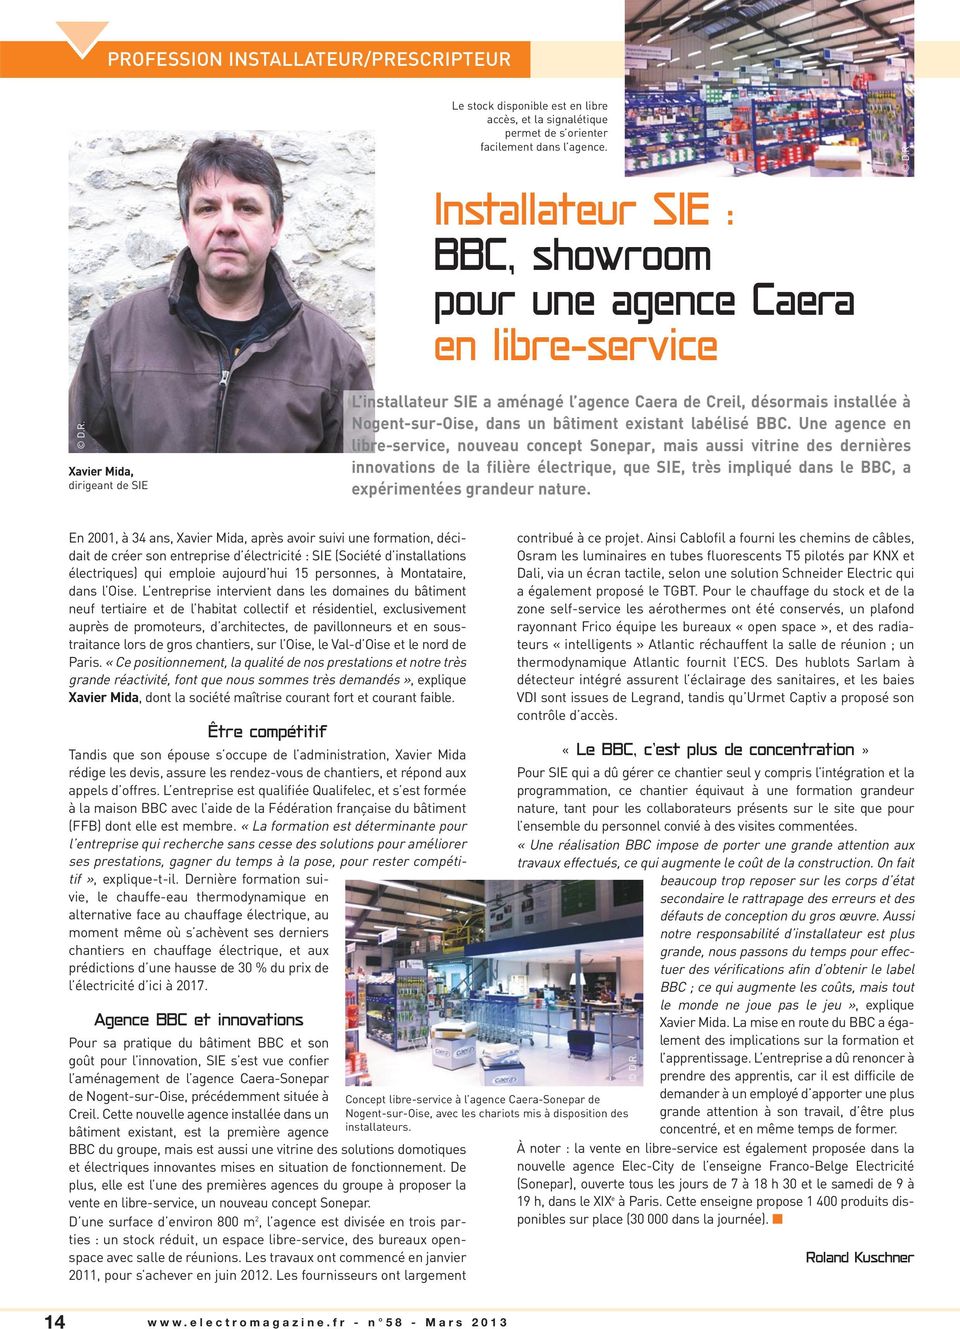 D.R. Xavier Mida, dirigeant de SIE L installateur SIE a aménagé l agence Caera de Creil, désormais installée à Nogent-sur-Oise, dans un bâtiment existant labélisé BBC.